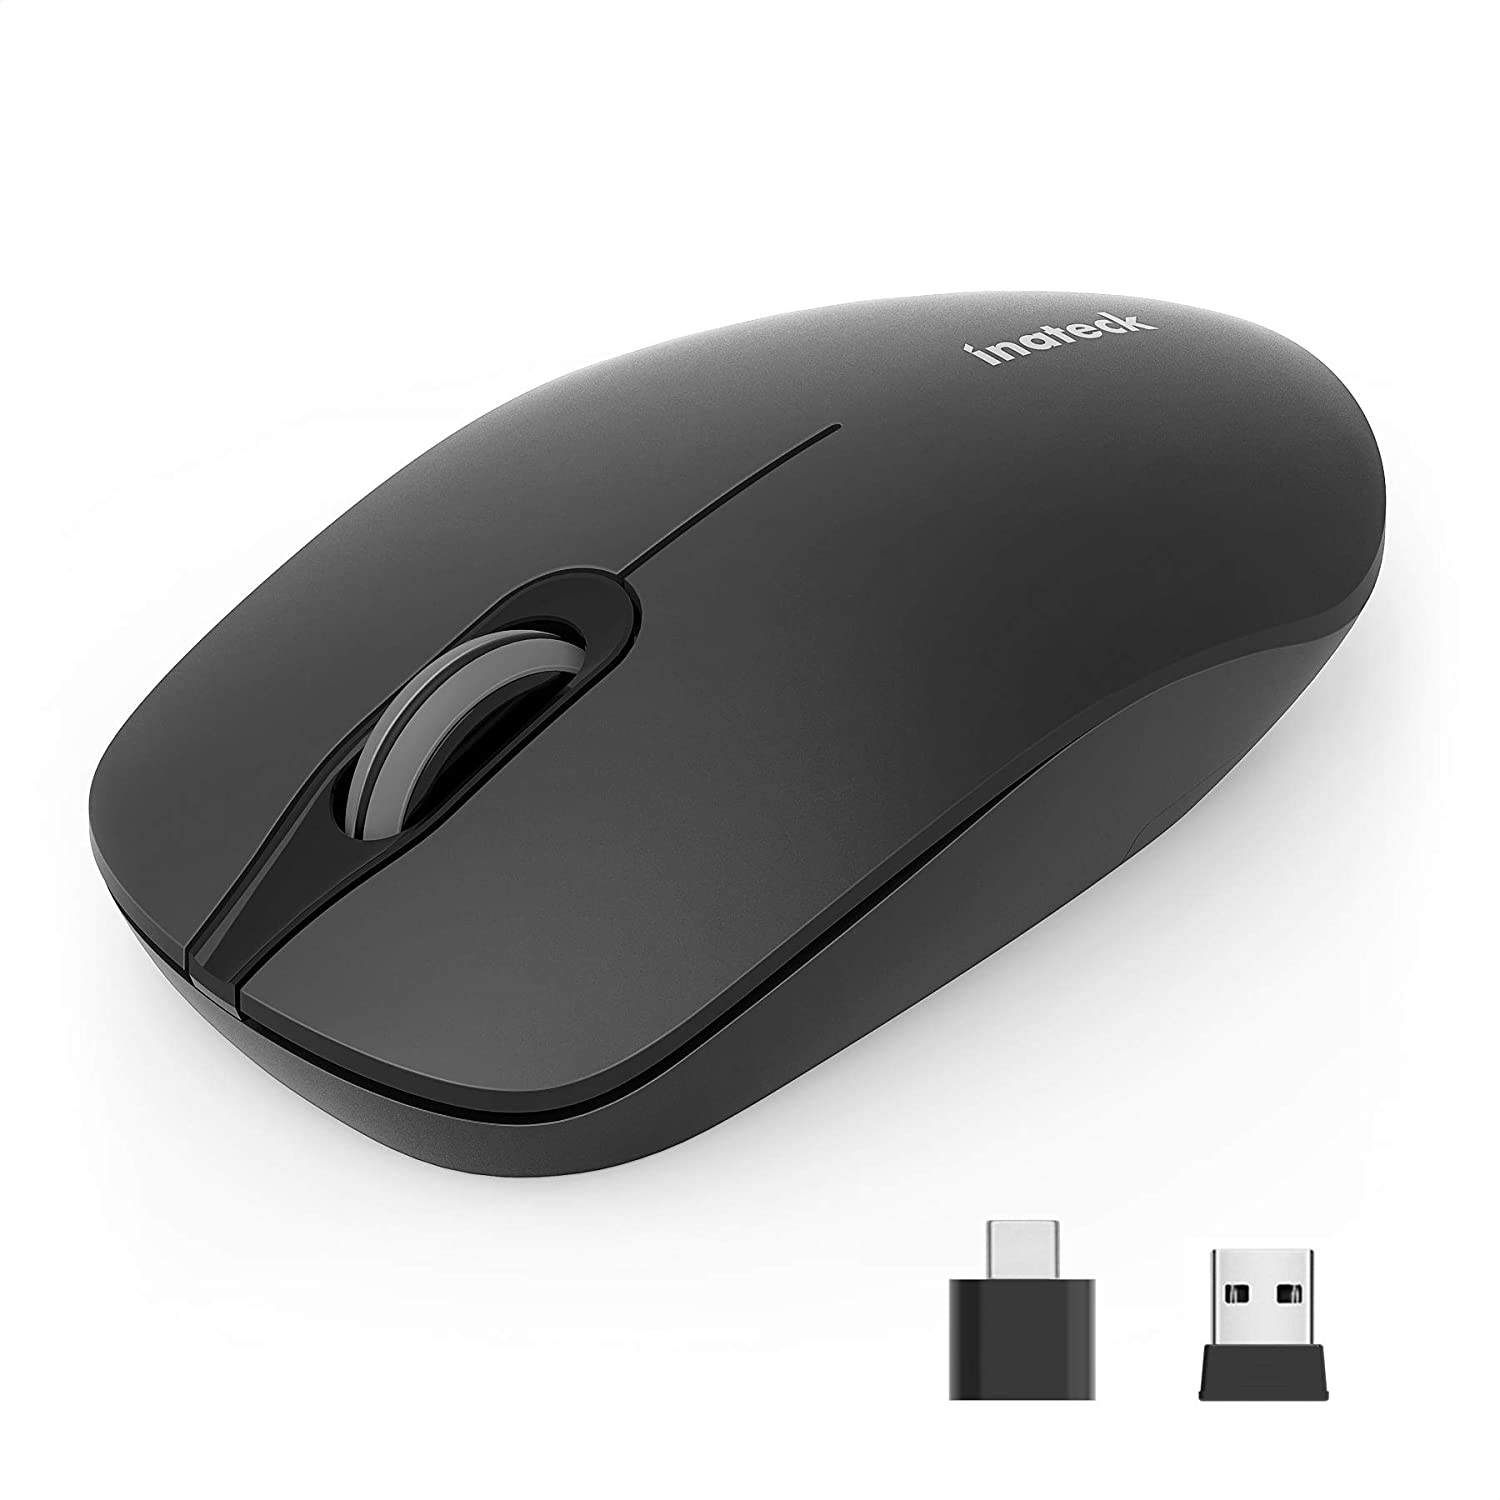 Empfänger und schwarz C Maus, kabellose A mit 2.4 Funkmaus GHz Silent Maus, Type USB INATECK Maus, DPI Drahtlose 1500